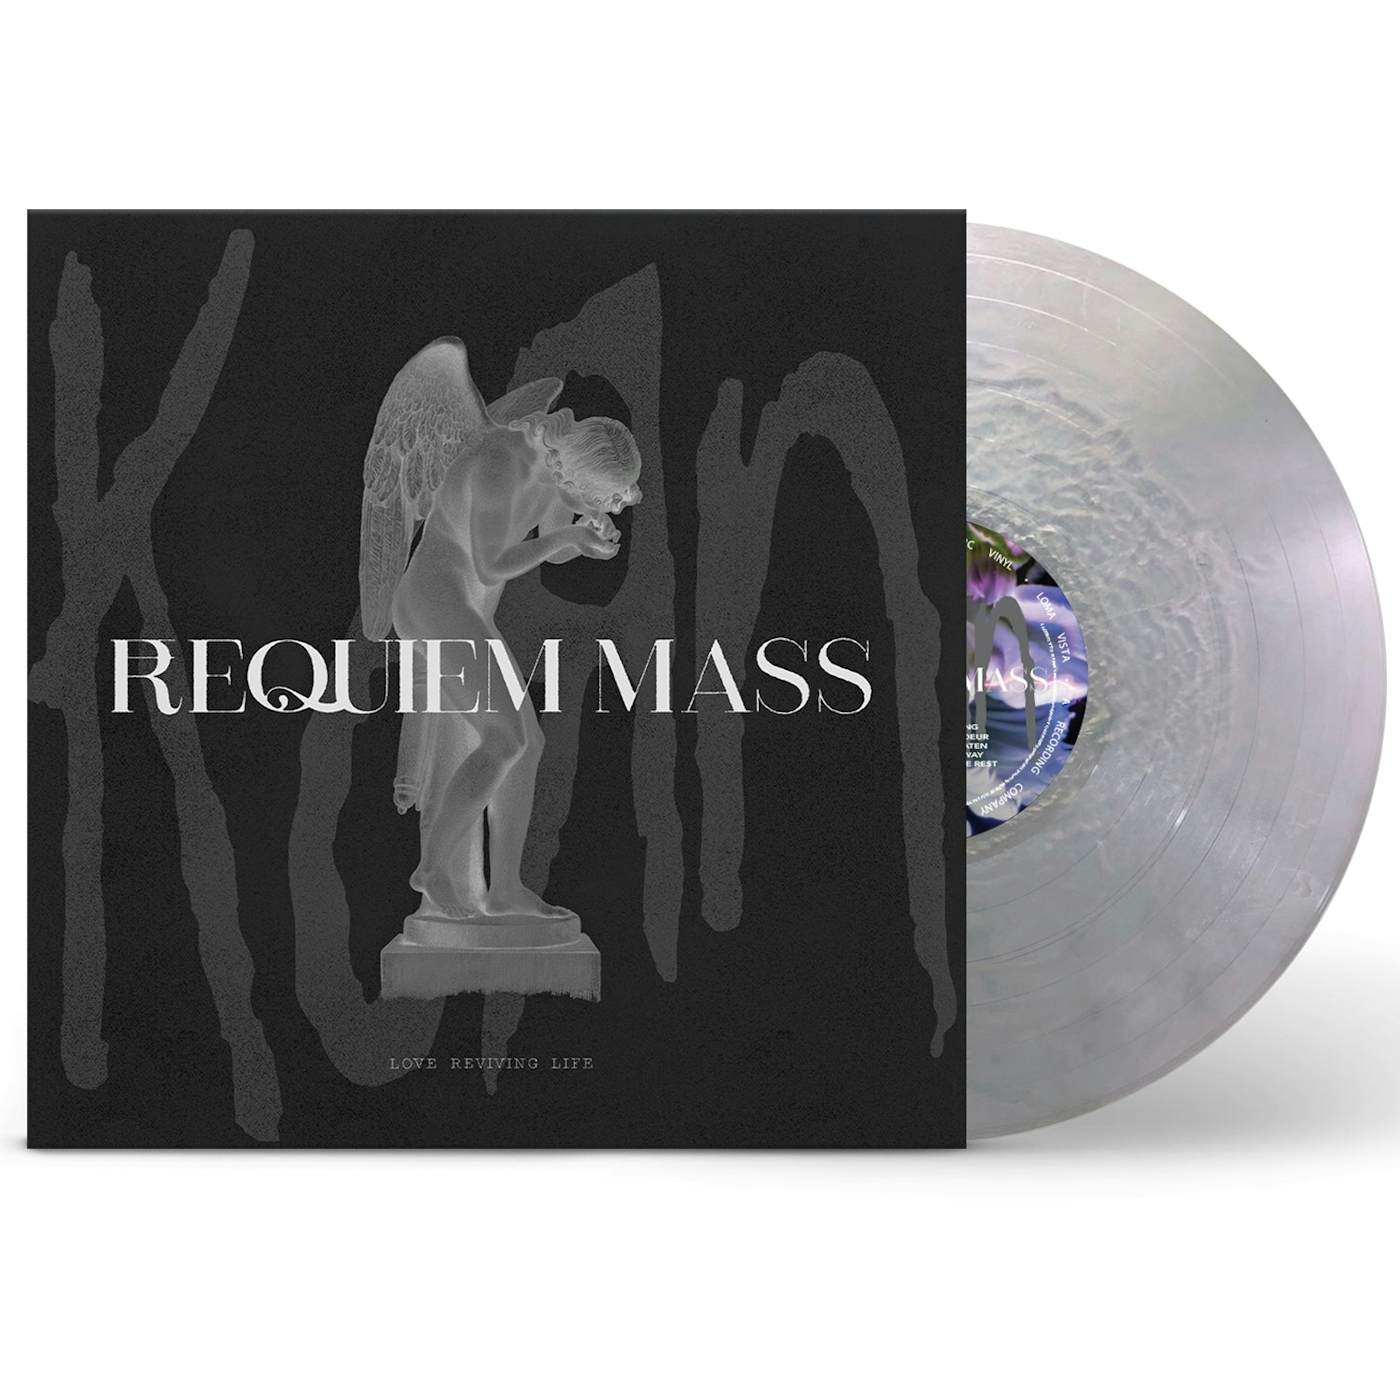 Korn Requiem Mass LP (Metallic Silver Vinyl) + Start The Healing Transcription Booklet